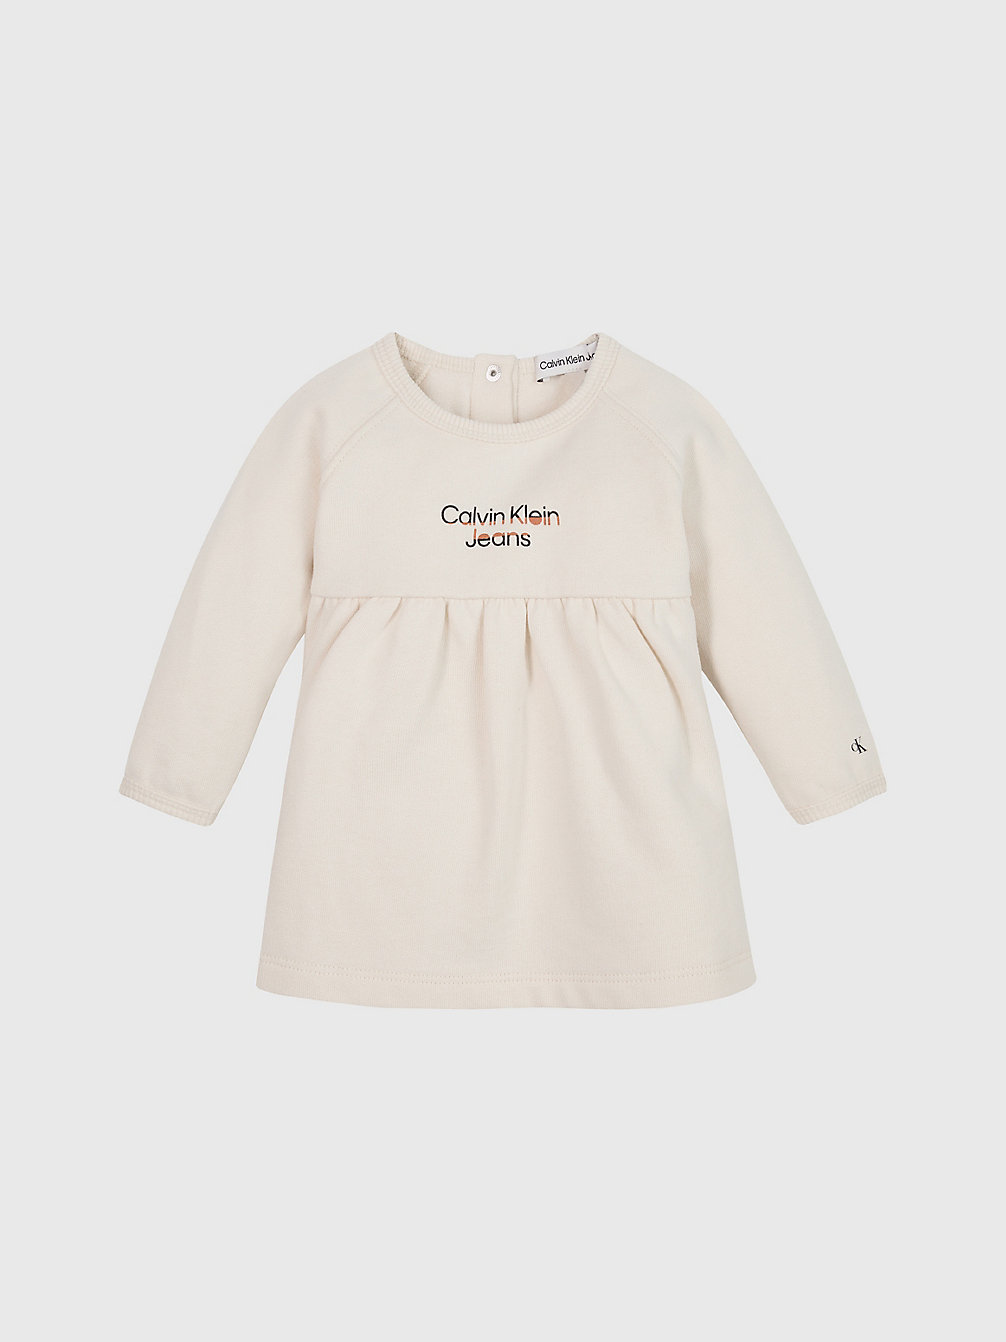 WHITECAP GRAY > Baby-Kleid Aus Fleece Mit Logo > undefined undefined - Calvin Klein